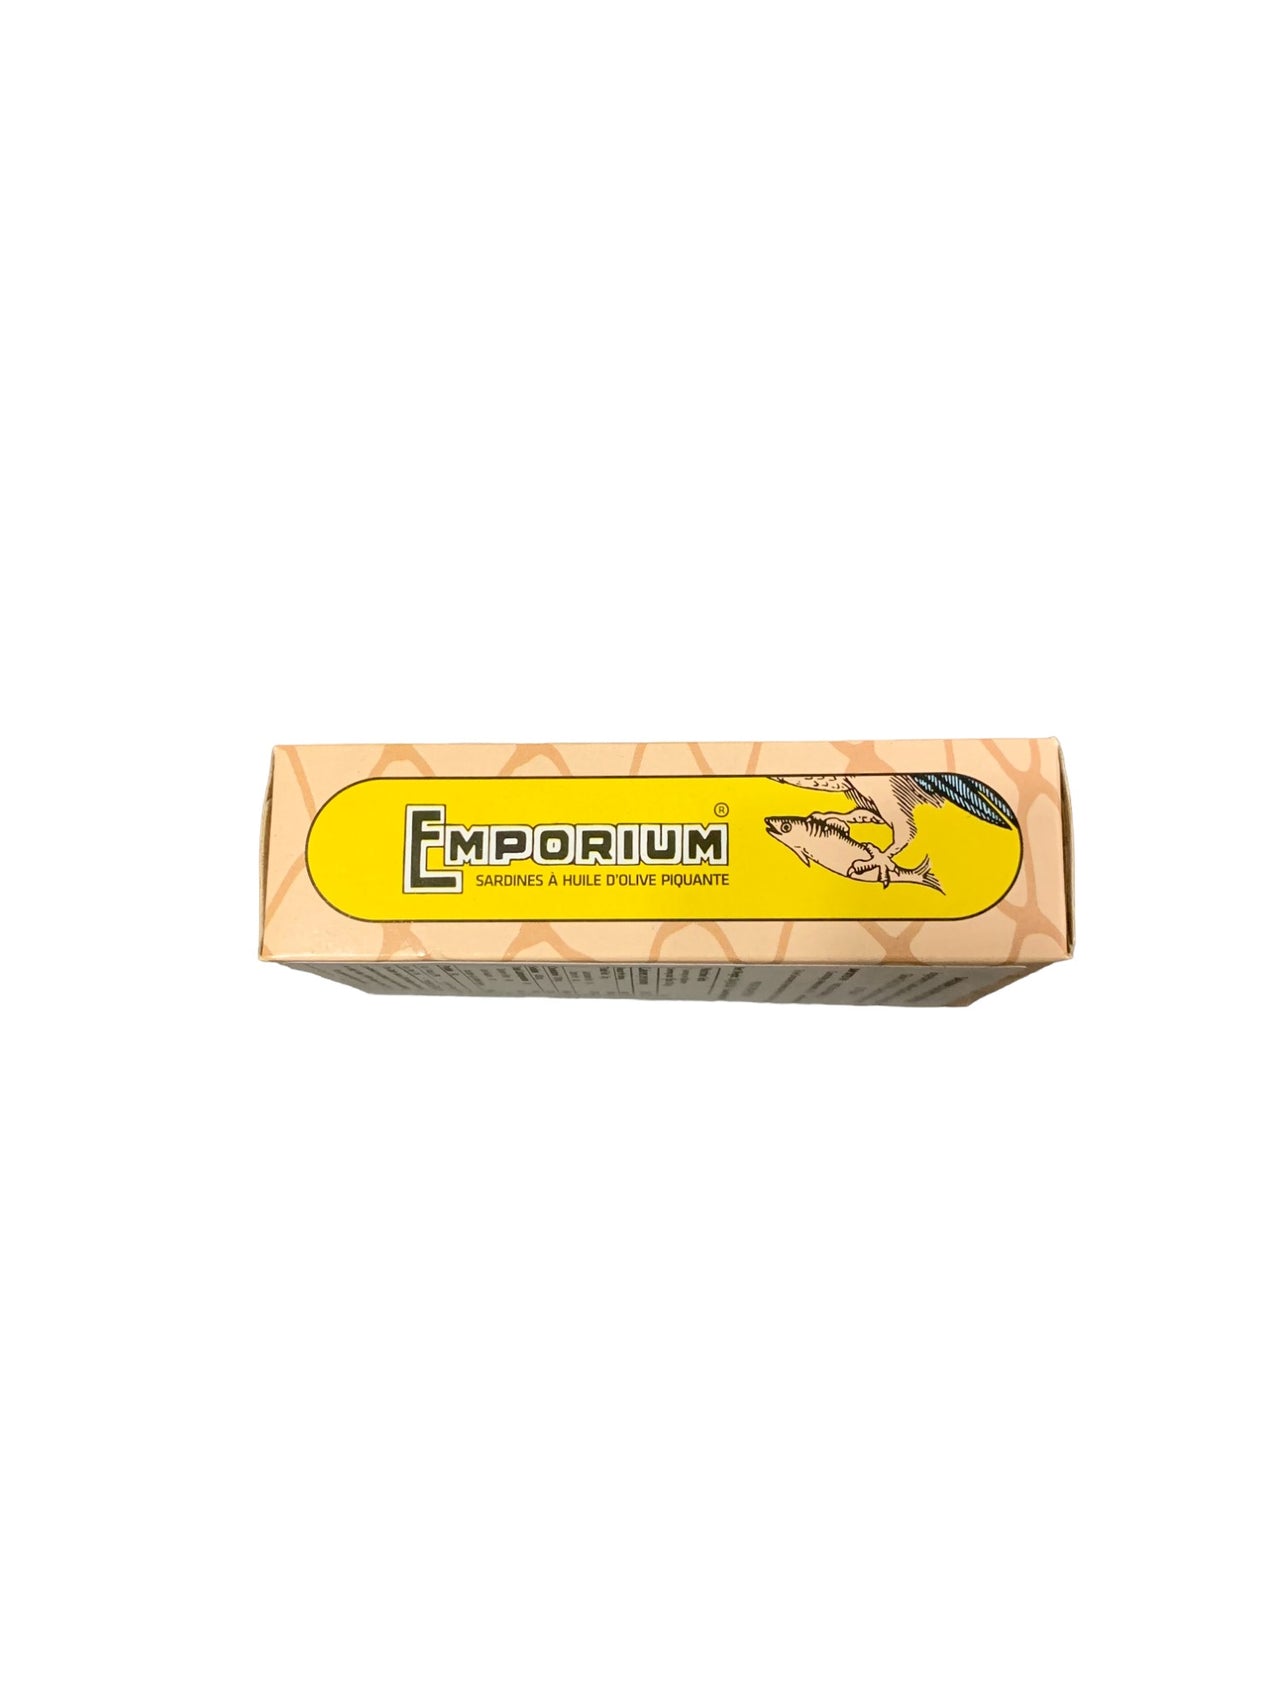 Emporium Sardines in Spicy Olive Oil - 6 Pack - TinCanFish